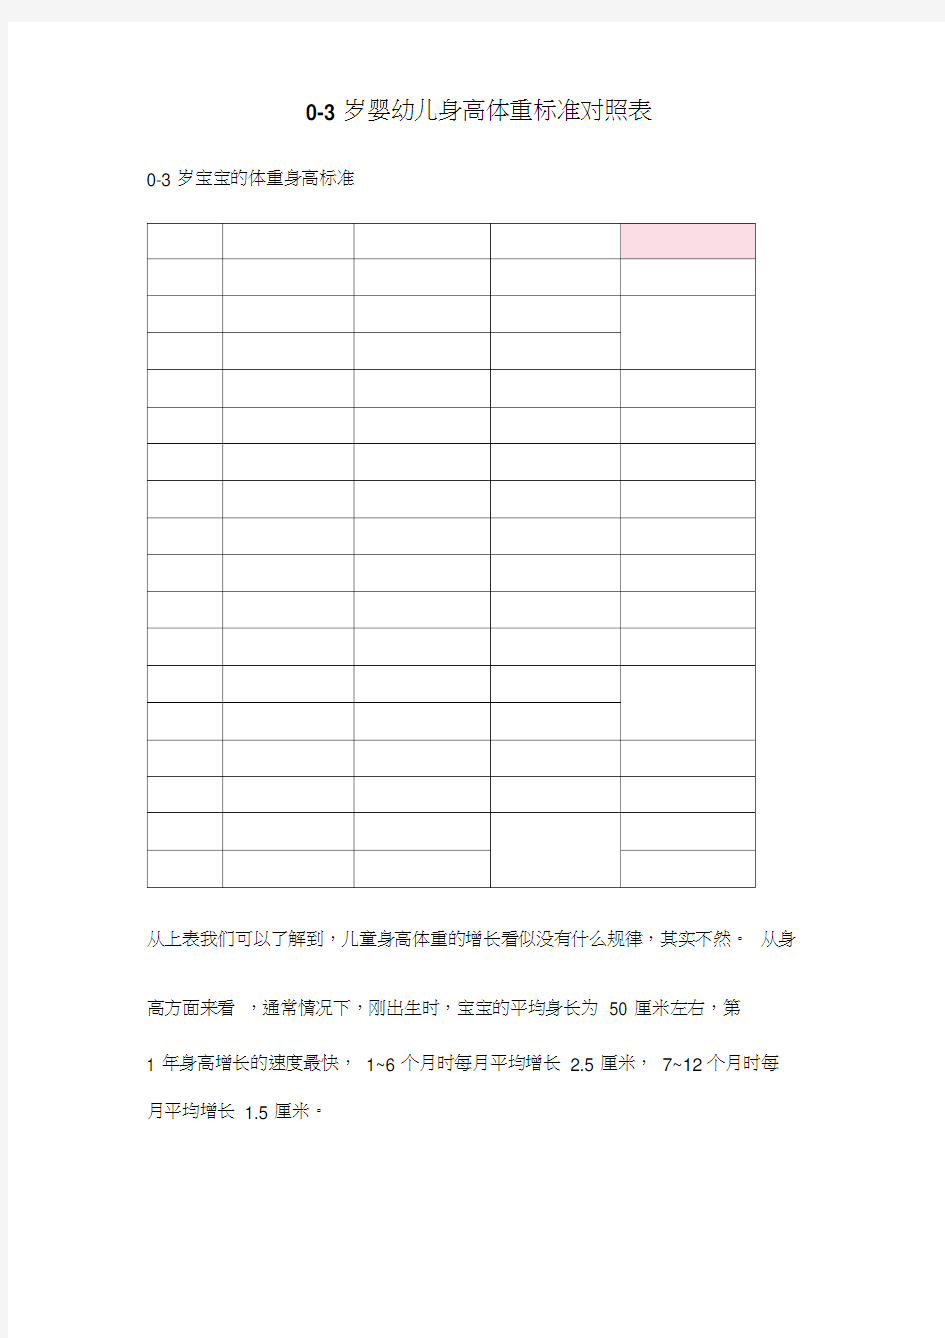 中国0-3岁婴幼儿身高体重标准对照表